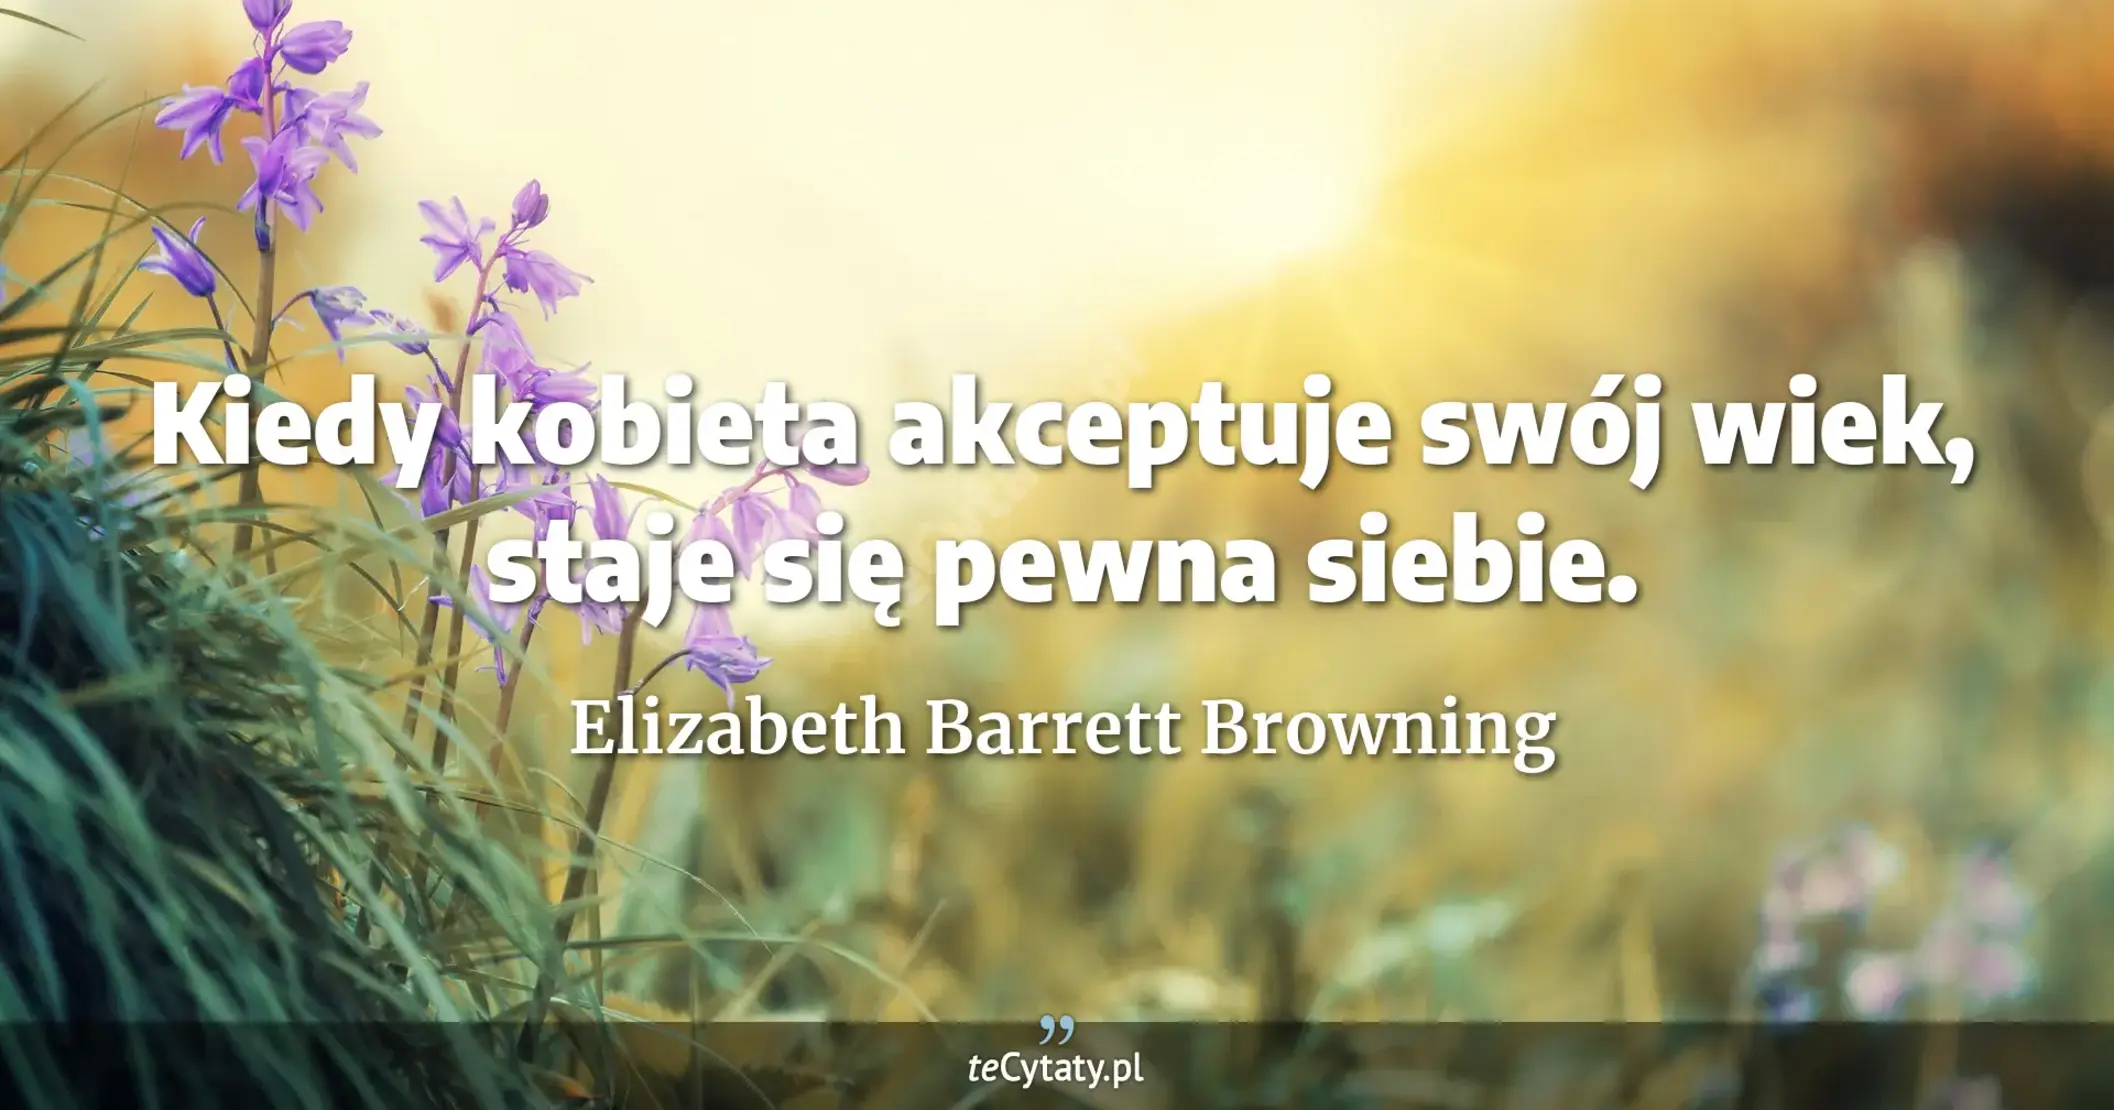 Kiedy kobieta akceptuje swój wiek, staje się pewna siebie. - Elizabeth Barrett Browning